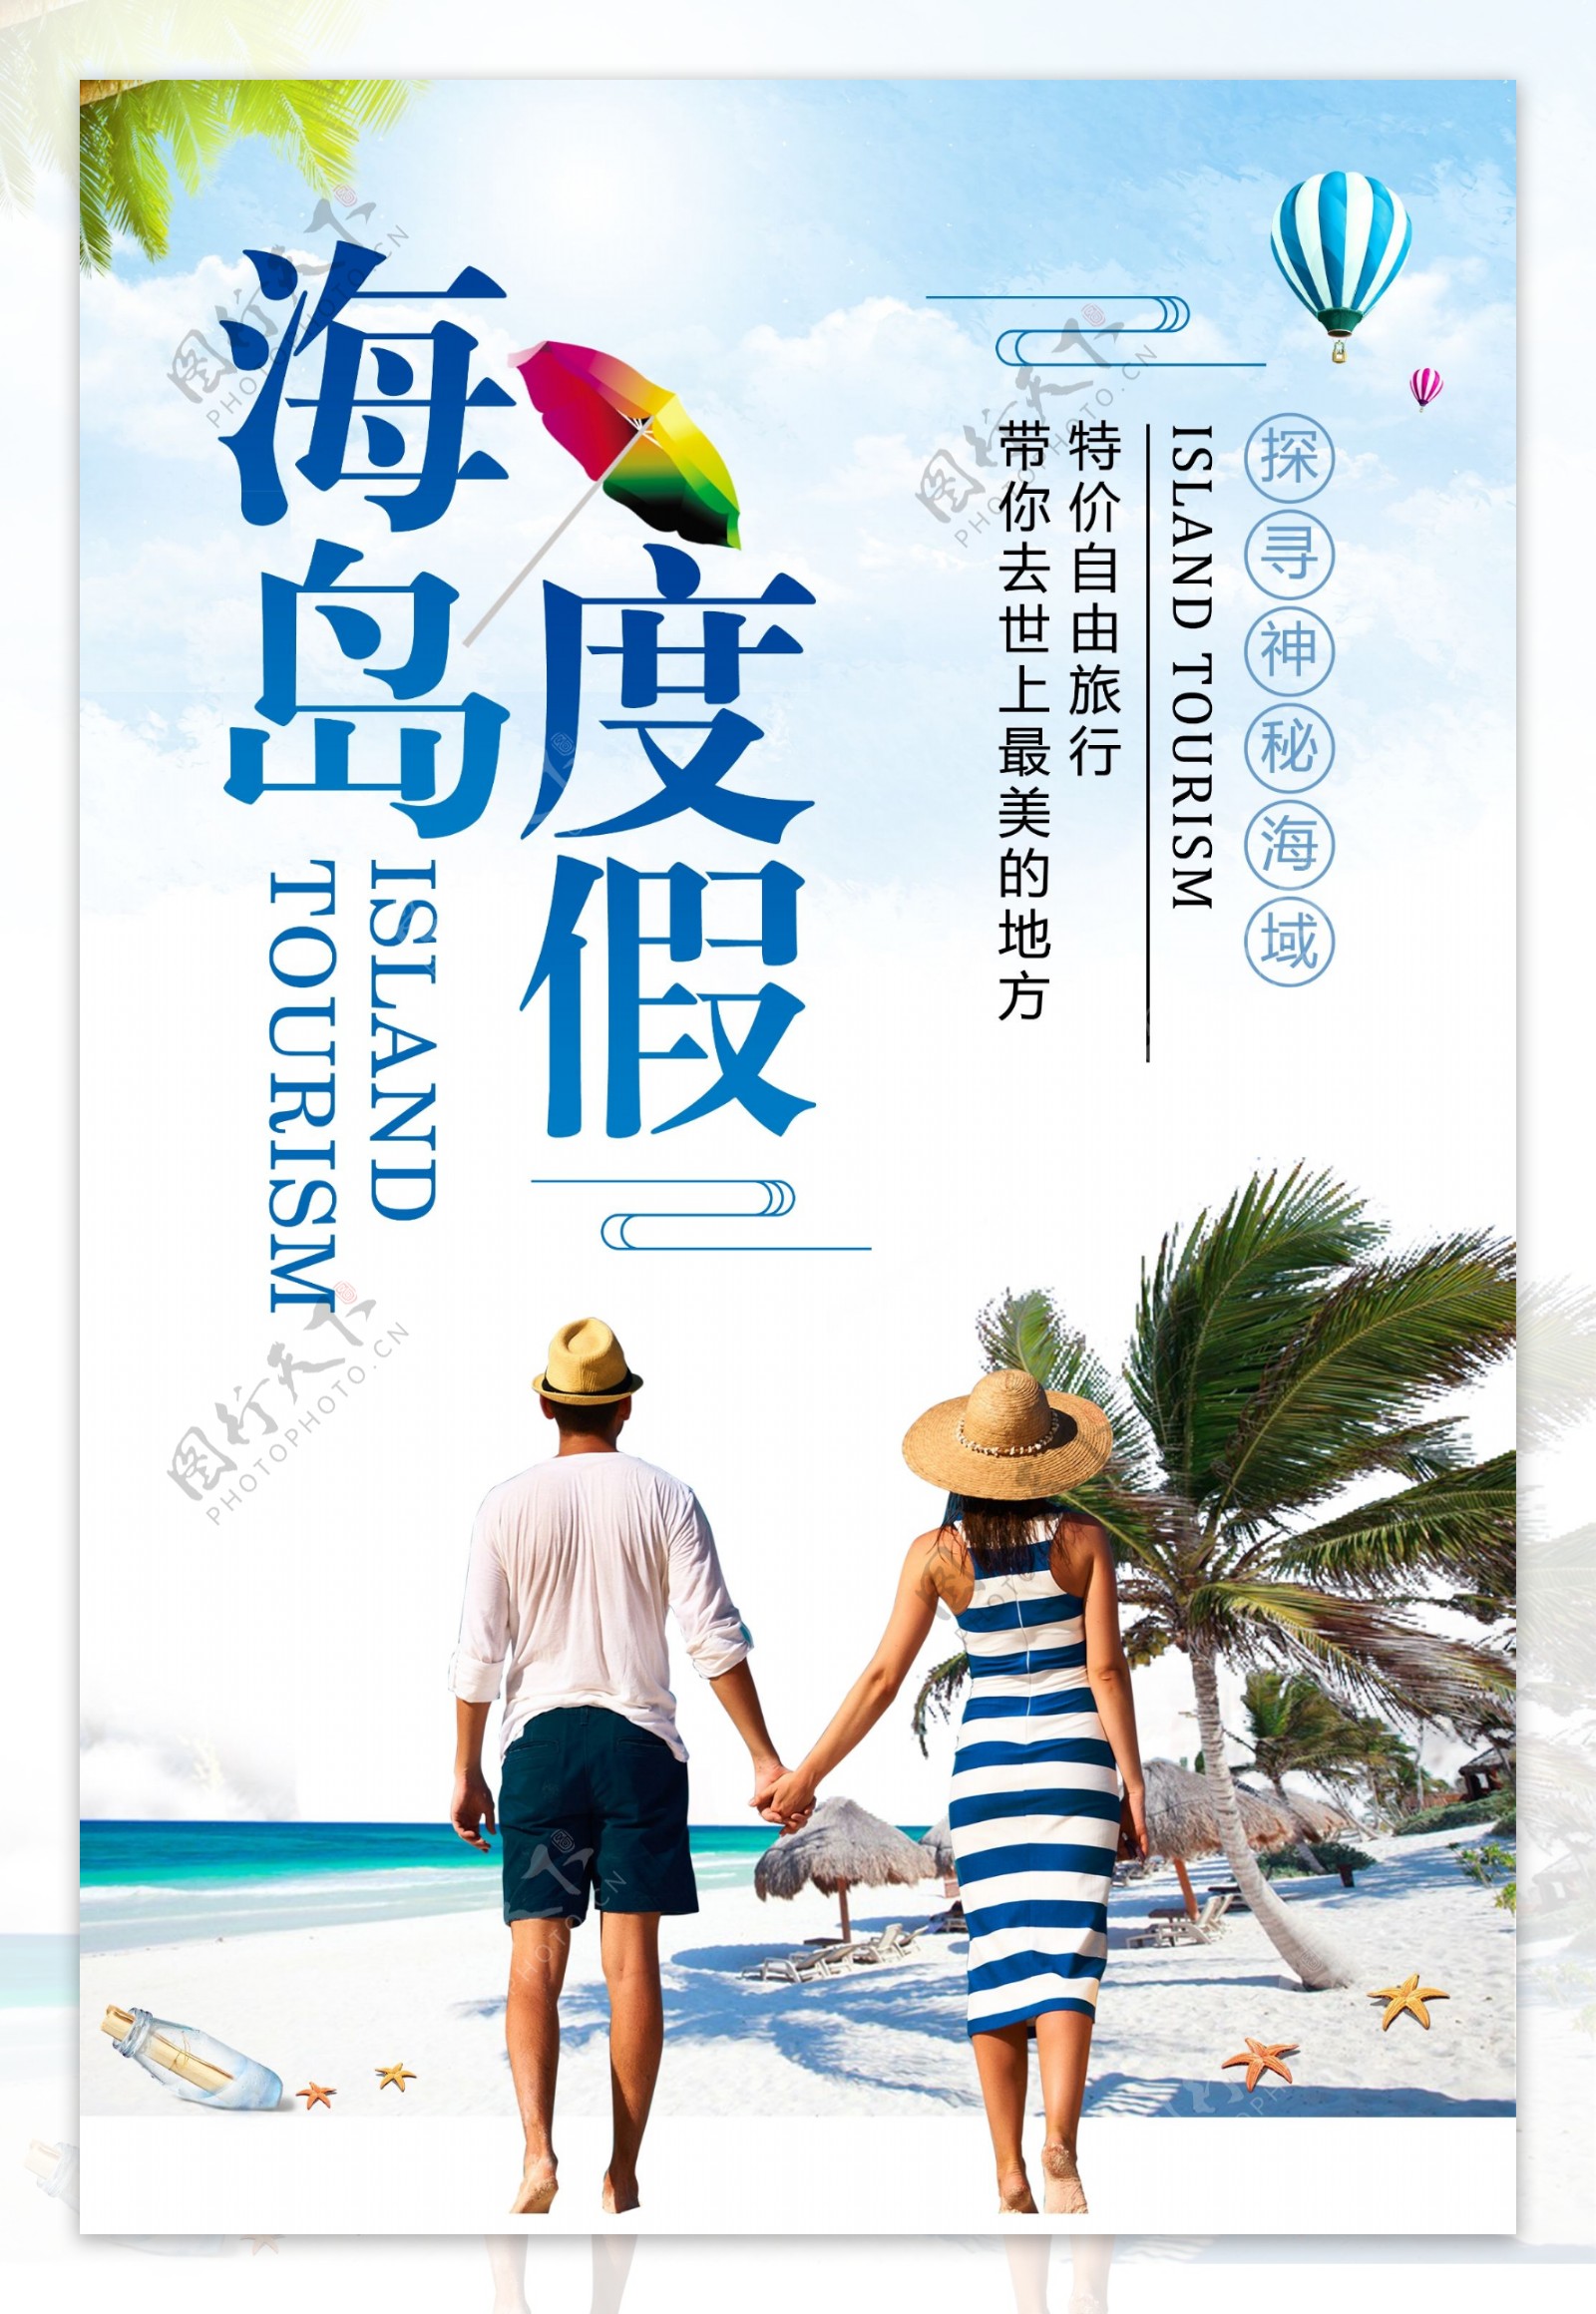 简约海岛度假旅游宣传海报设计